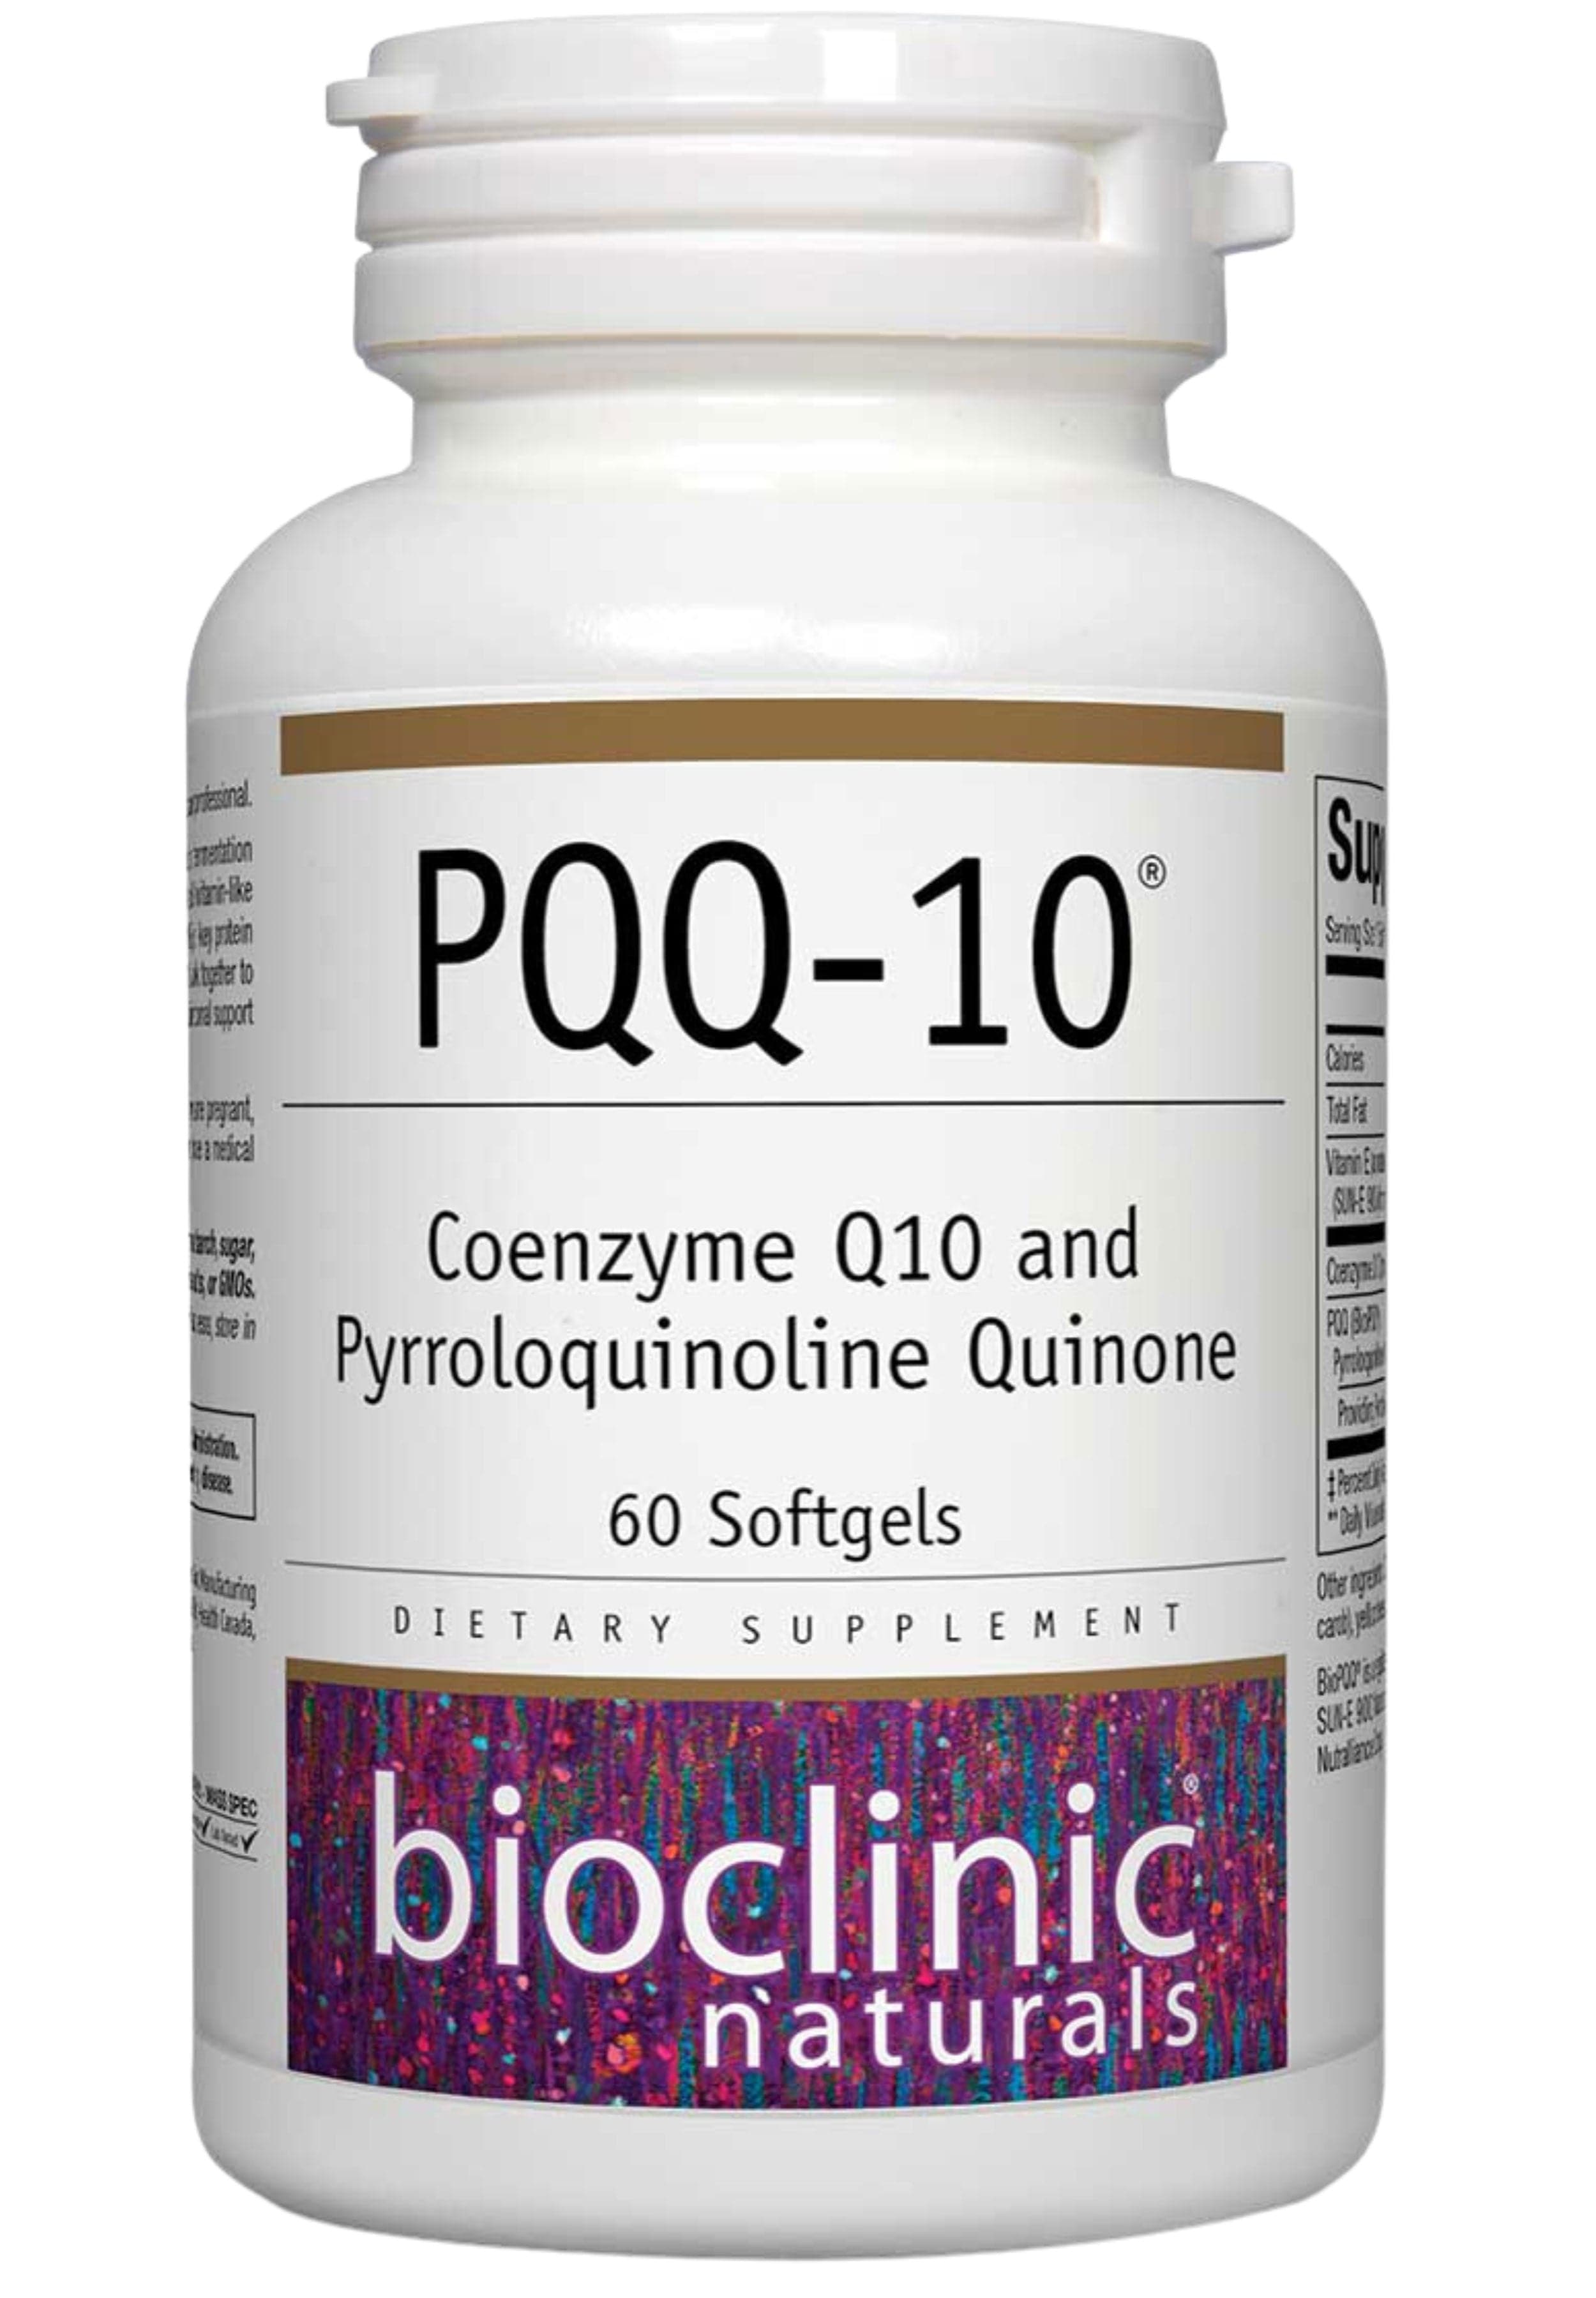 Bioclinic Naturals PQQ-10